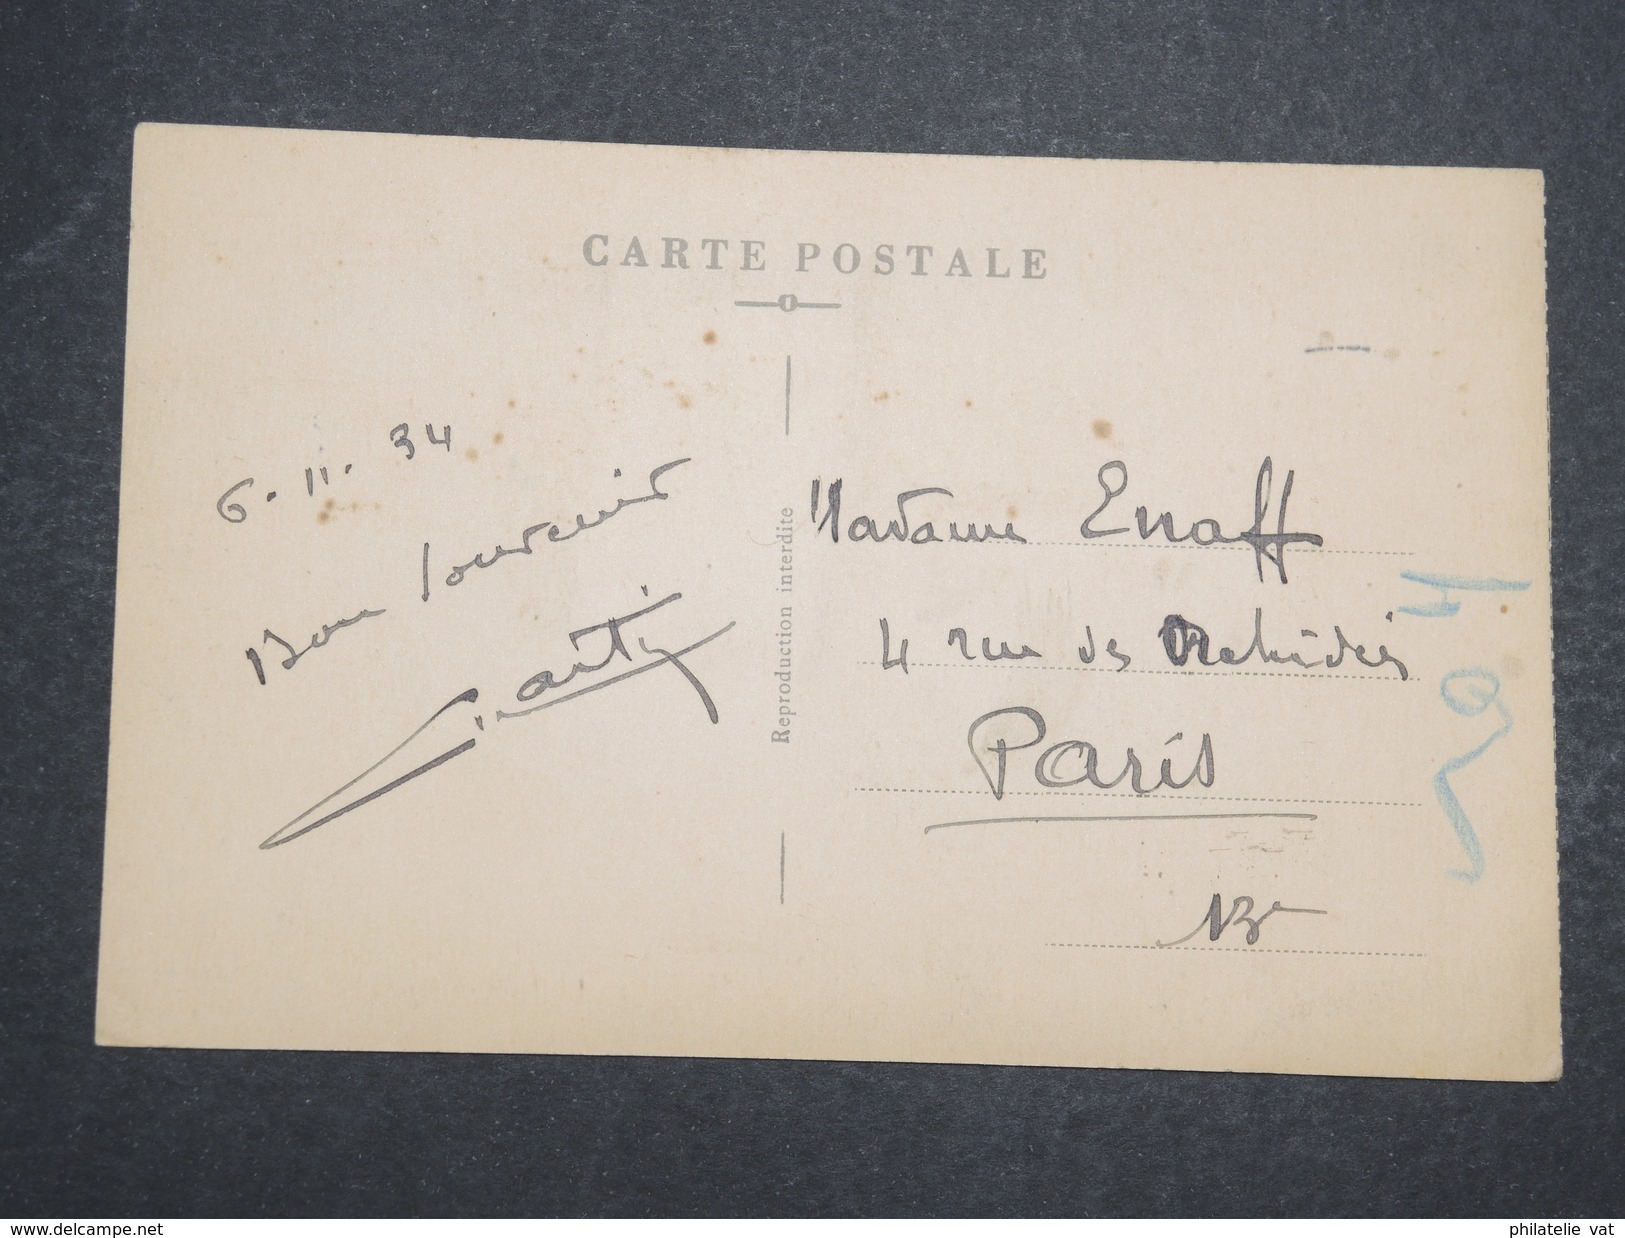 COTE FRANçAISE DES SOMALIS - Carte Postale Djibouti Pour Paris -Nov 1934 - P22098 - Covers & Documents